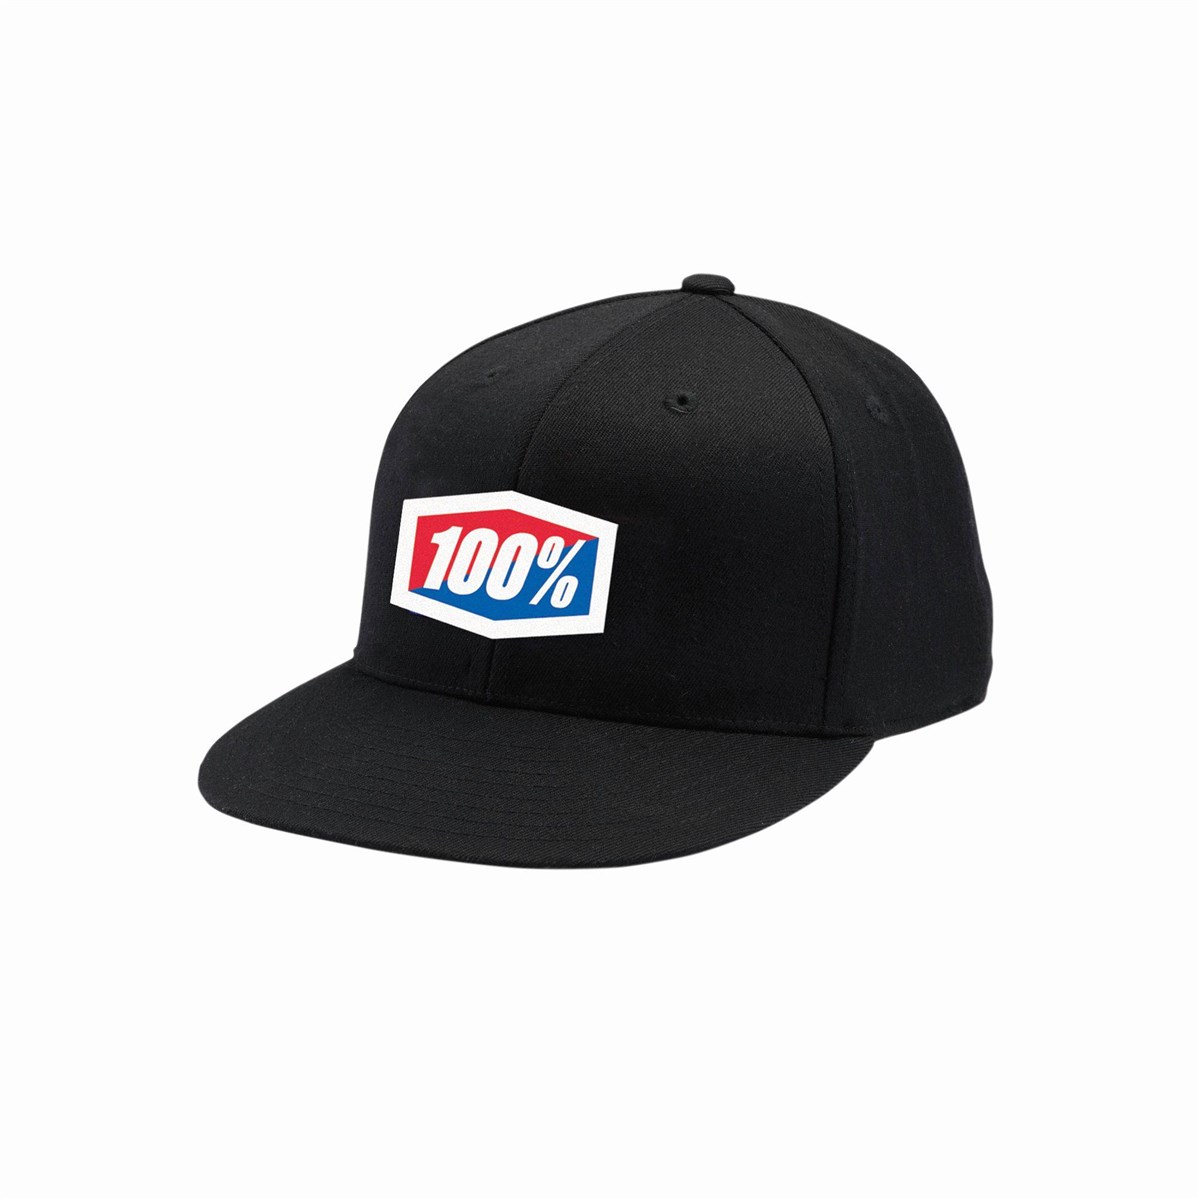 100% Official J-Fit Flexfit Hat product image